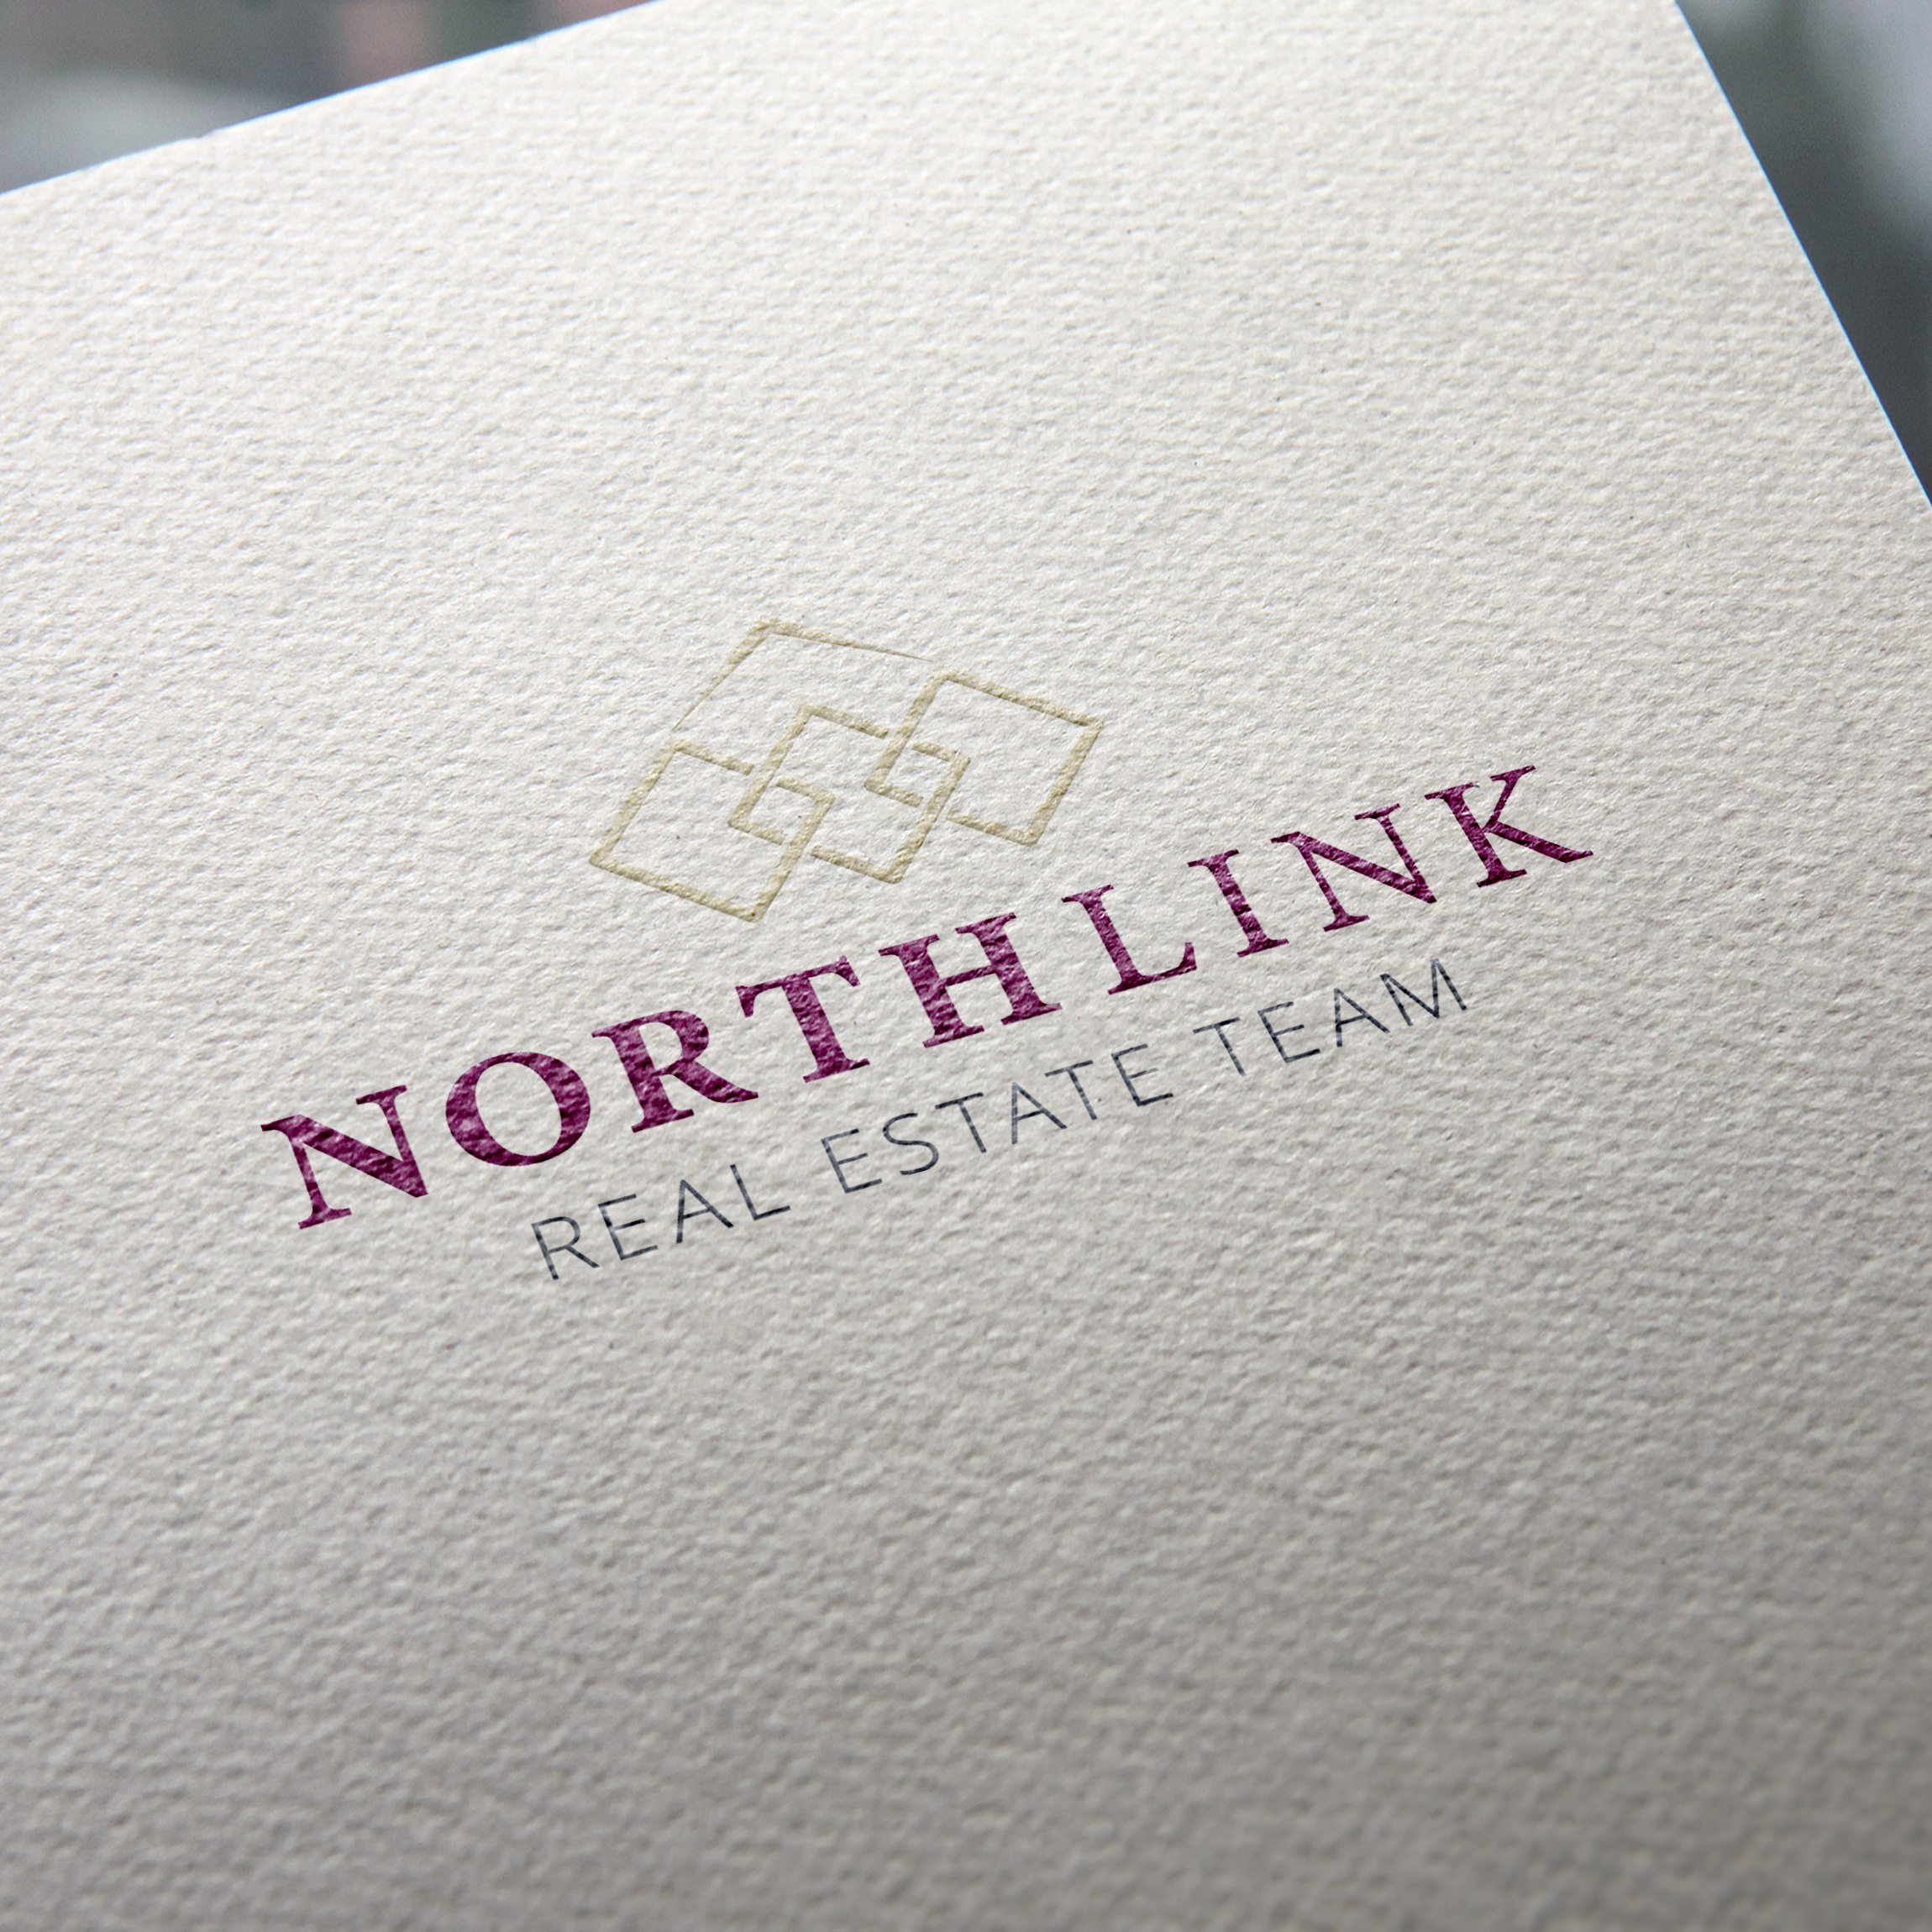 NorthLink Real Estate Logo Design